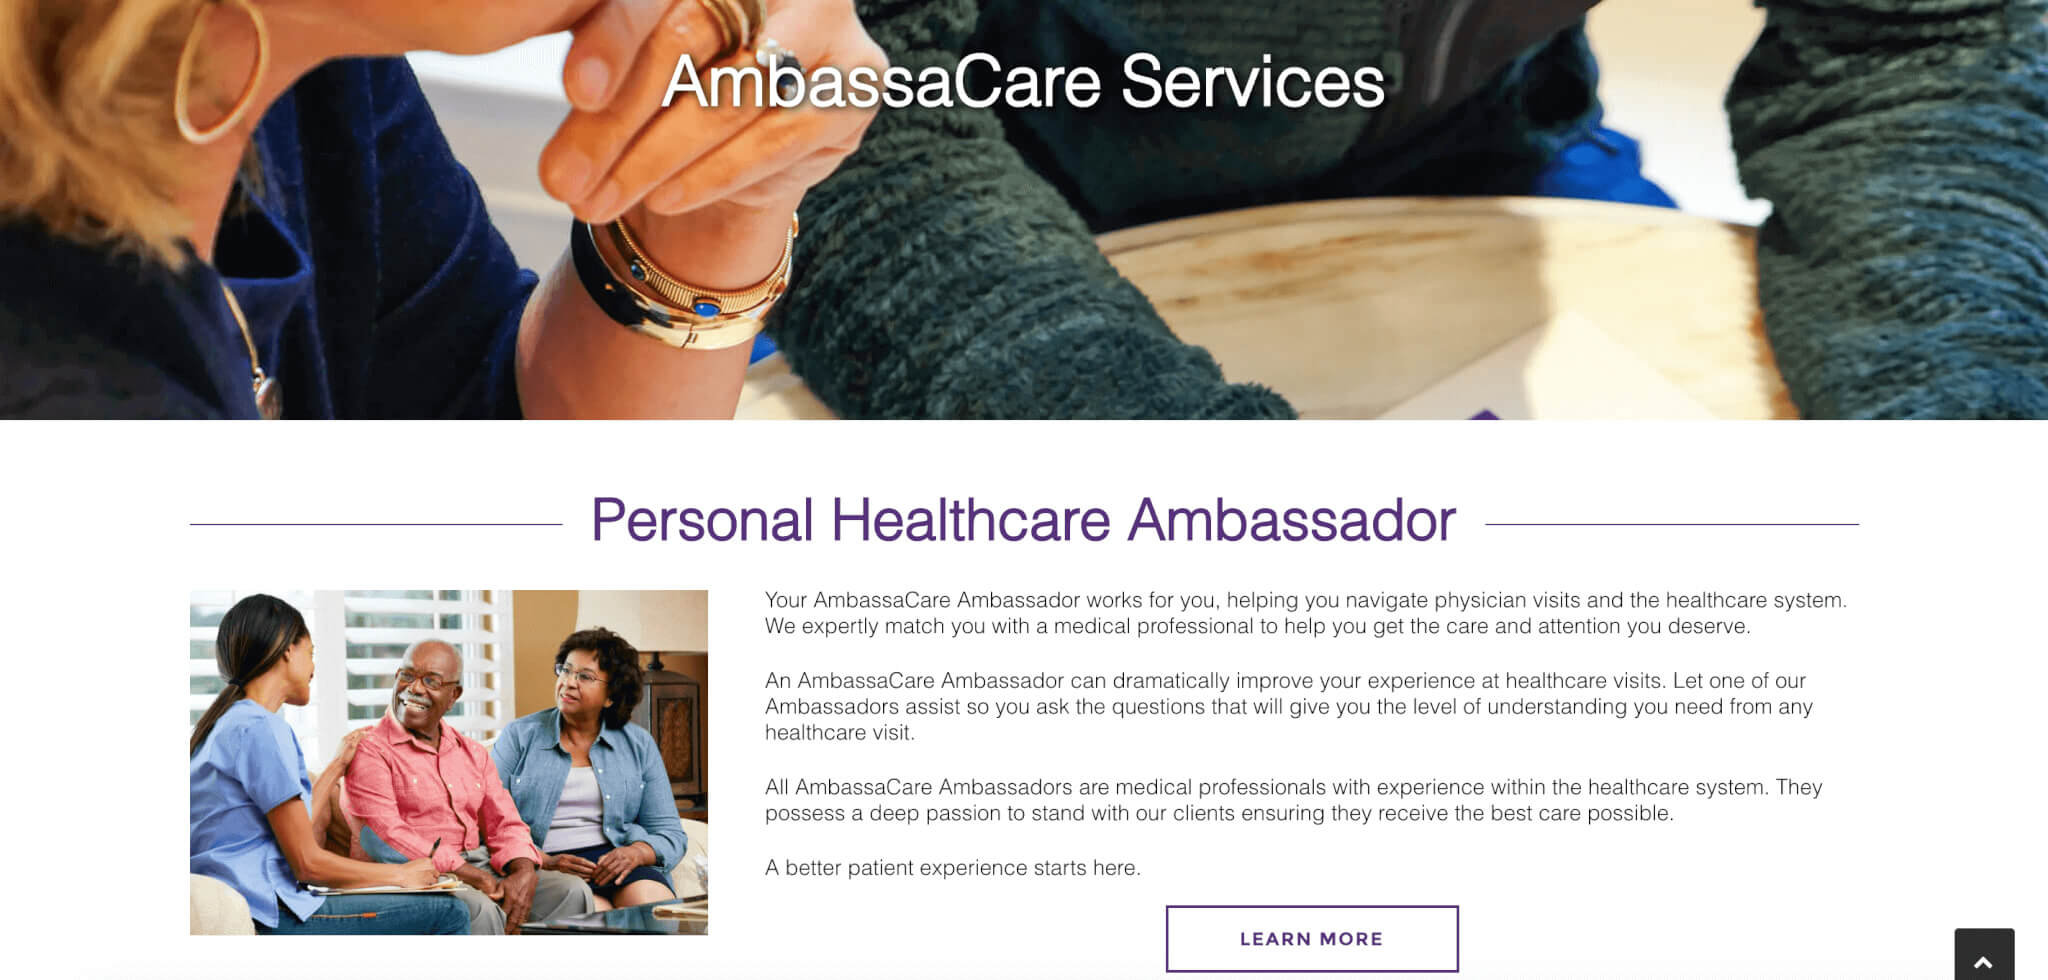 ambassacare medical website design in charleston